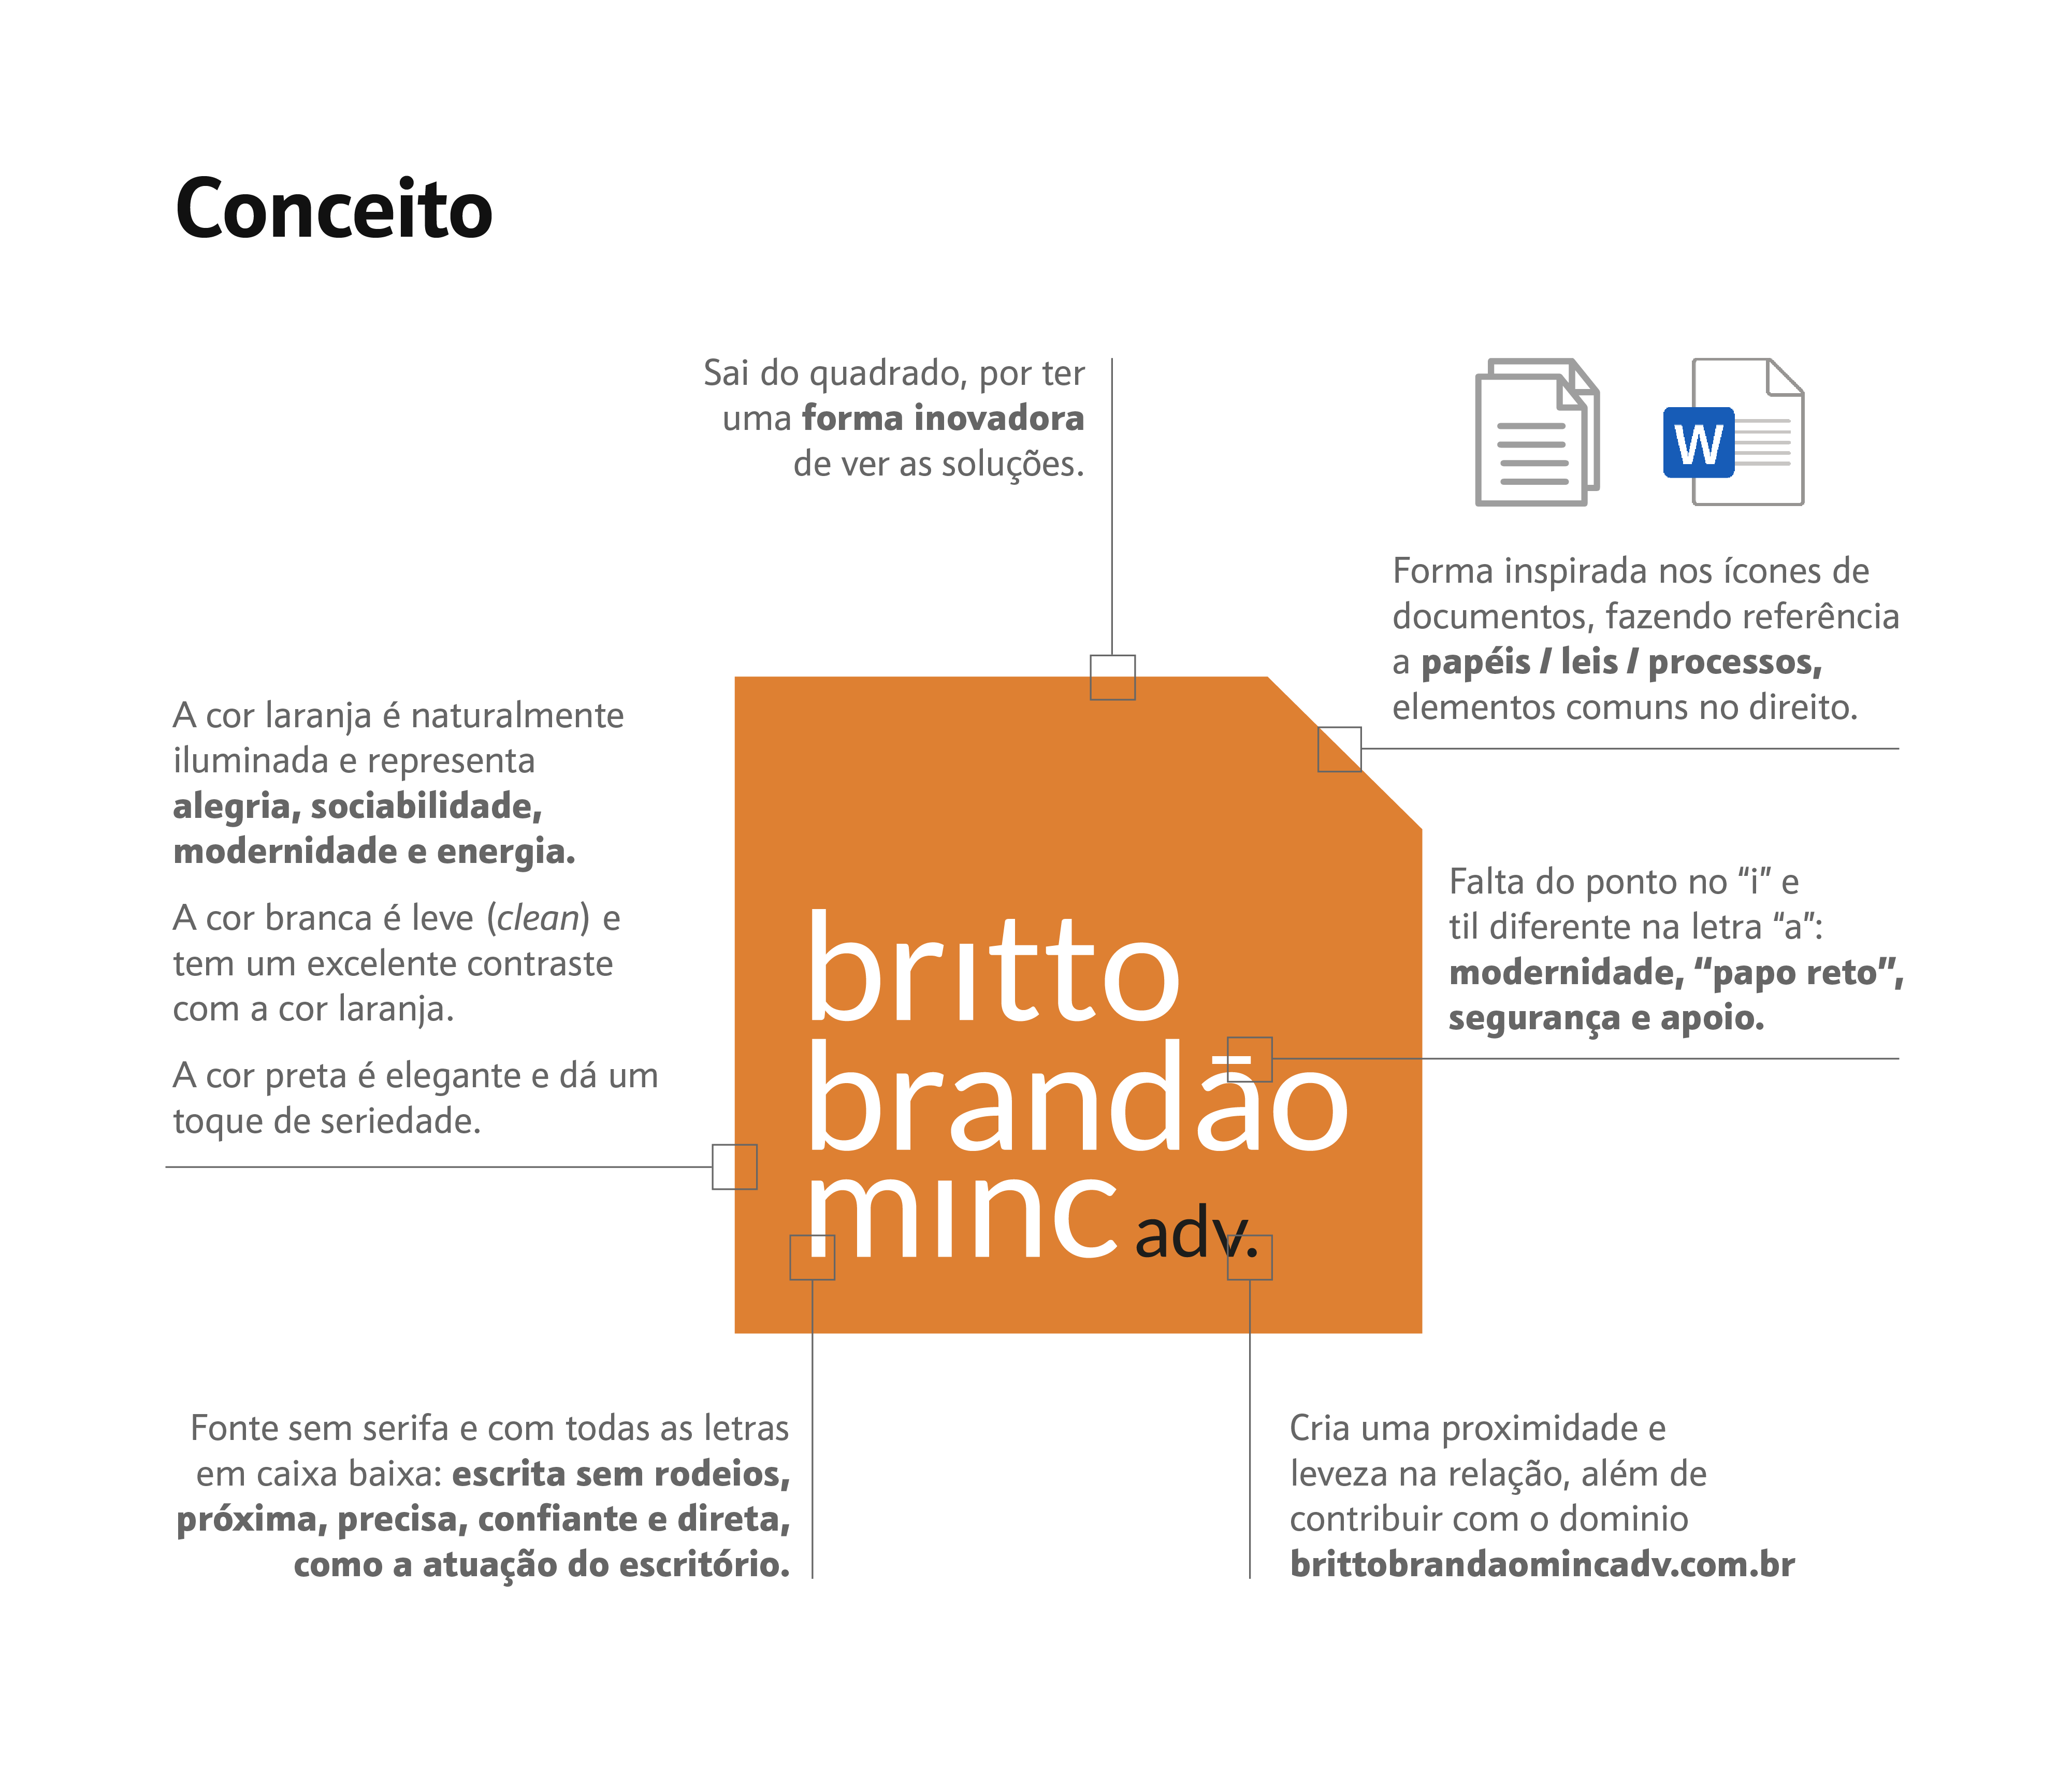 Case Britto, Brandão e Minc adv. | EnterDesign